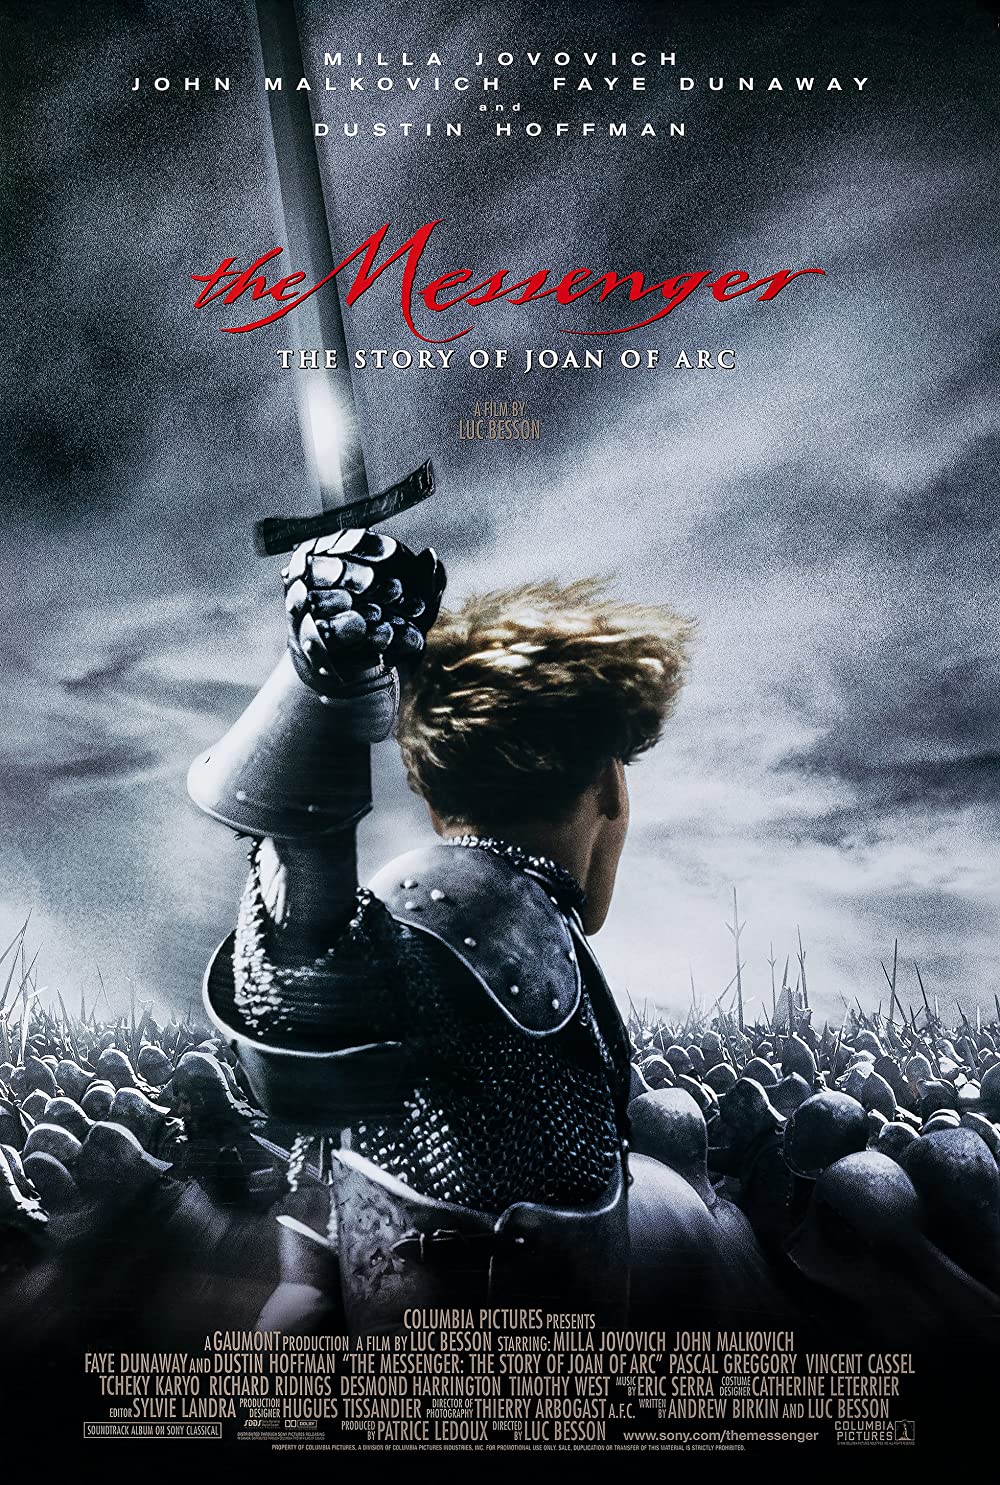 Filmbeschreibung zu Jeanne D'Arc